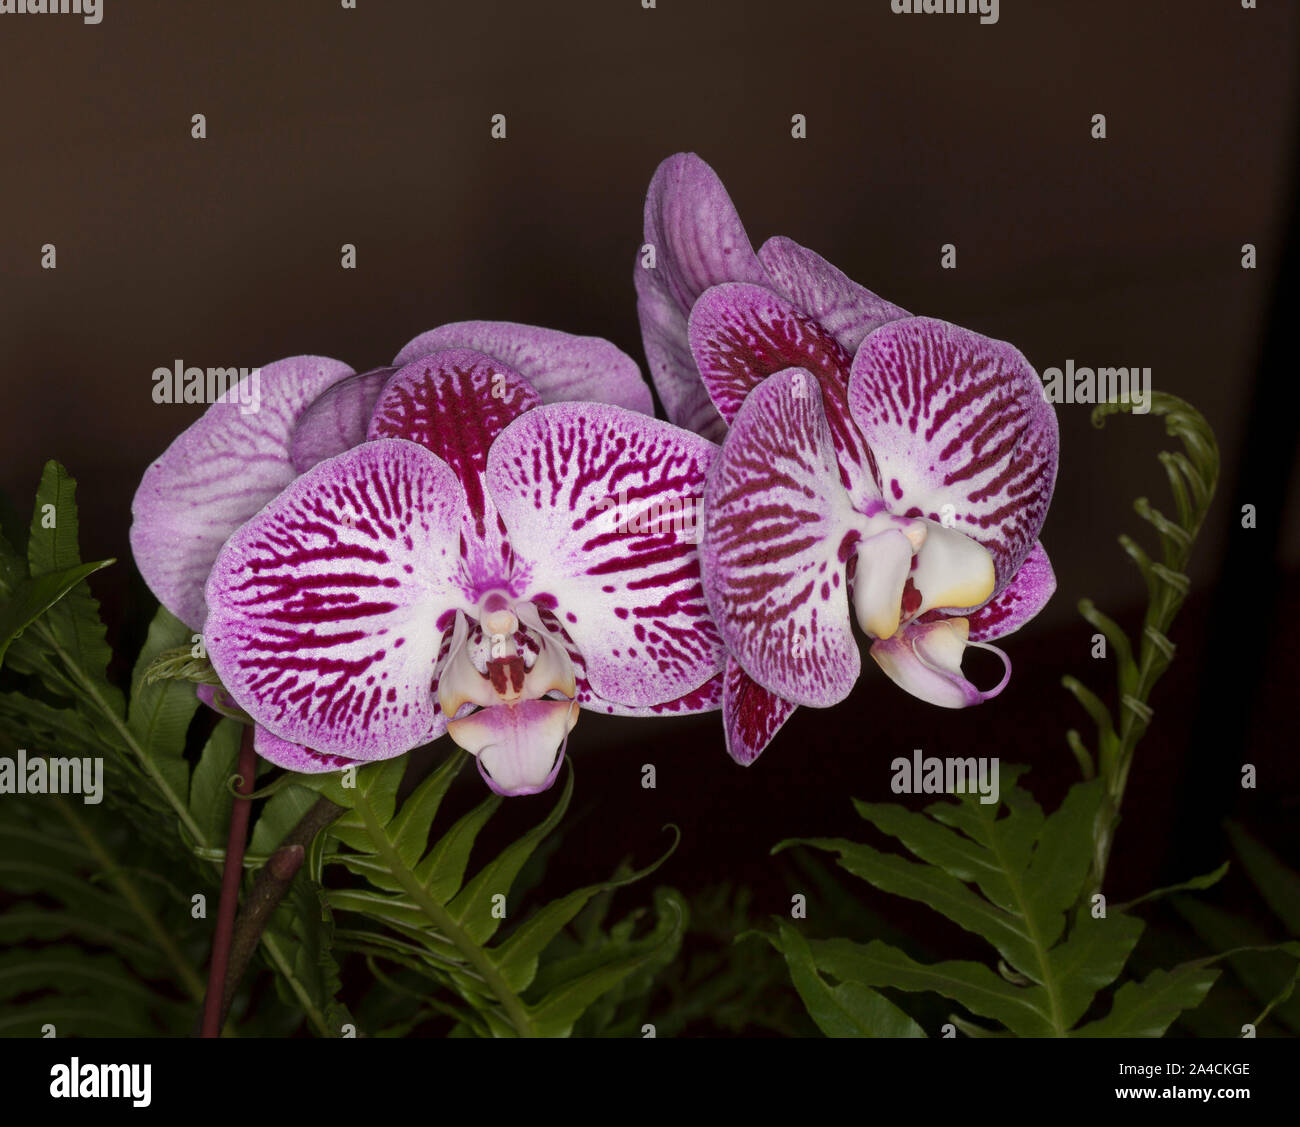 Cluster von atemberaubenden violett/roten und weißen Blumen von Phalaenopsis/Motten Orchidee neben Farnblätter und auf dunklem Hintergrund Stockfoto